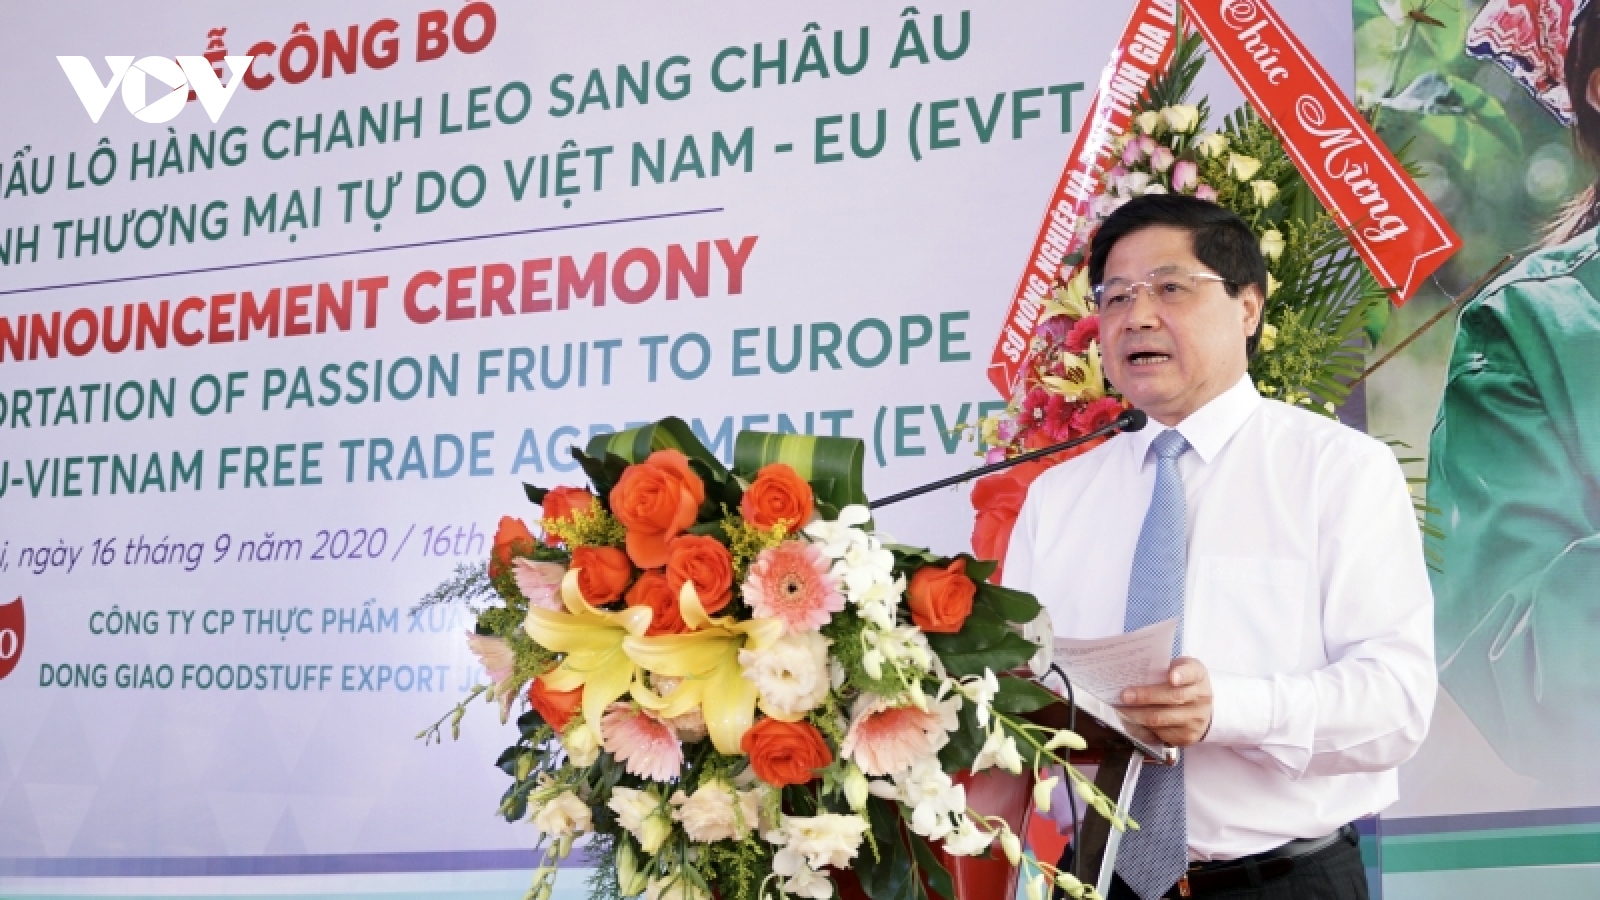 Gia Lai xuất khẩu lô chanh leo đầu tiên theo Hiệp định EVFTA sang EU